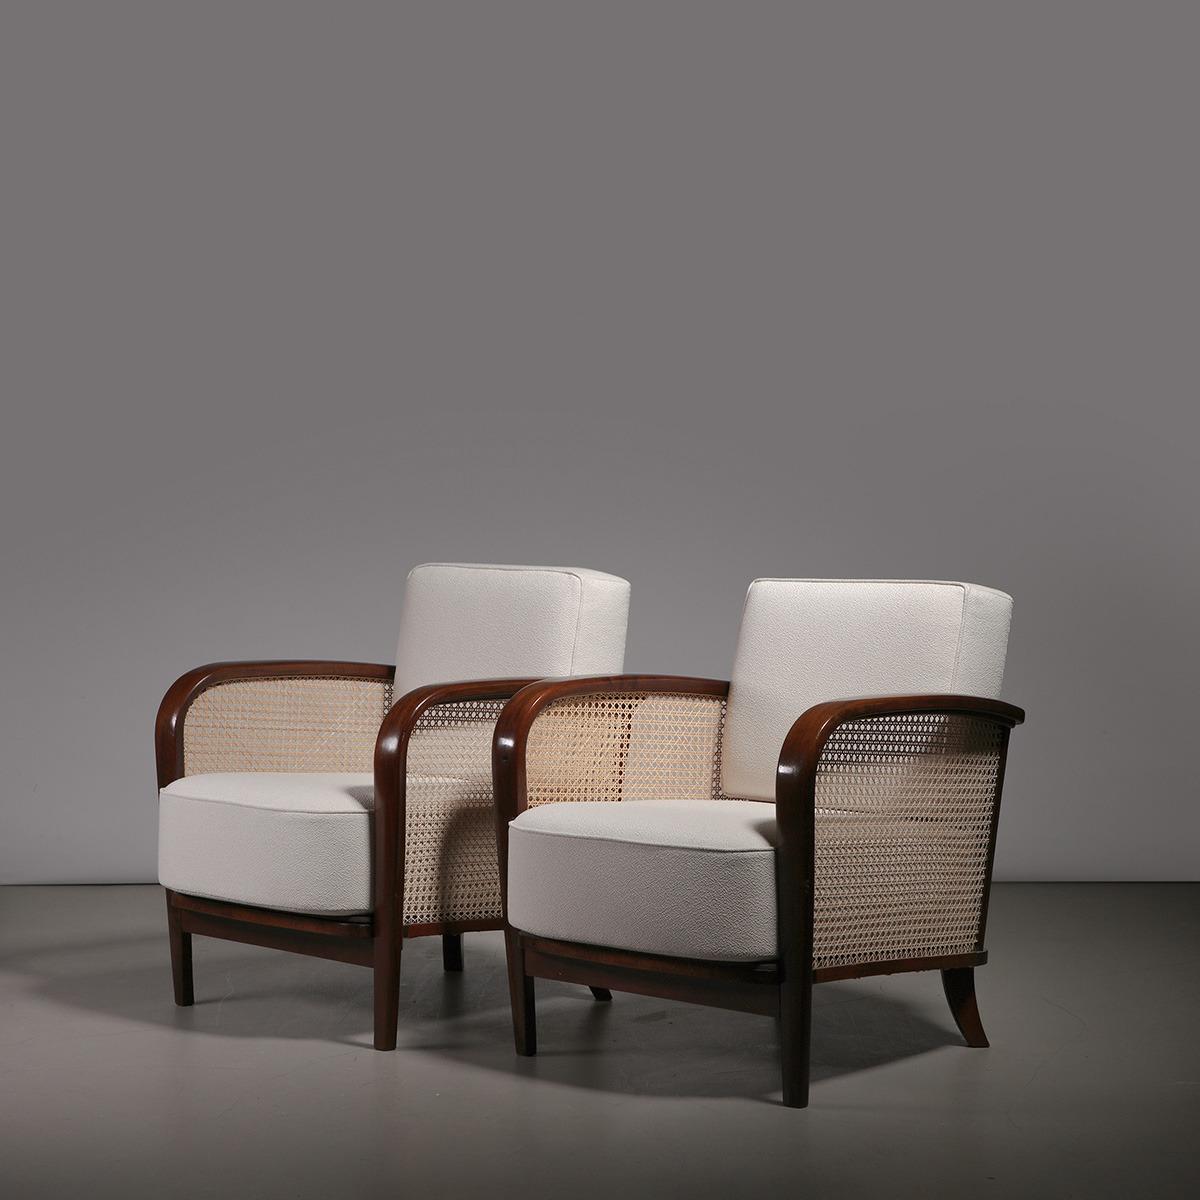 Rare paire de chaises longues en noyer et tapisserie en tissu blanc, modèle H-319, conçues par Jindřich Halabala et fabriquées par UP závody dans l'ancienne Tchécoslovaquie, années 1920.

L'un des modèles de fauteuil les plus rares du célèbre